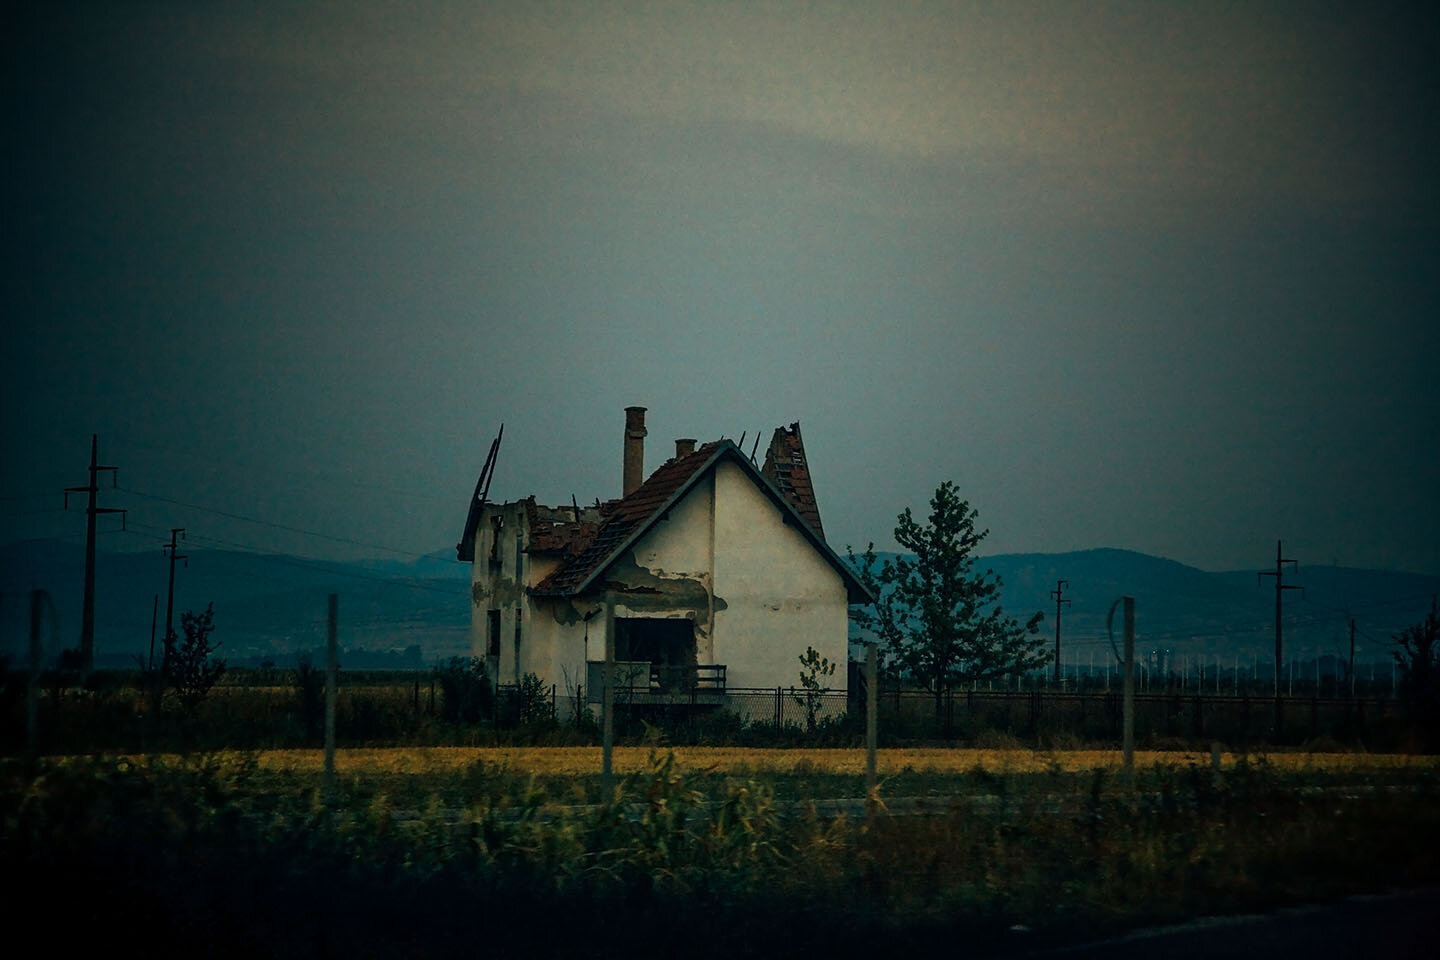   House   Vukovar outskirts, Croatia, 2008 